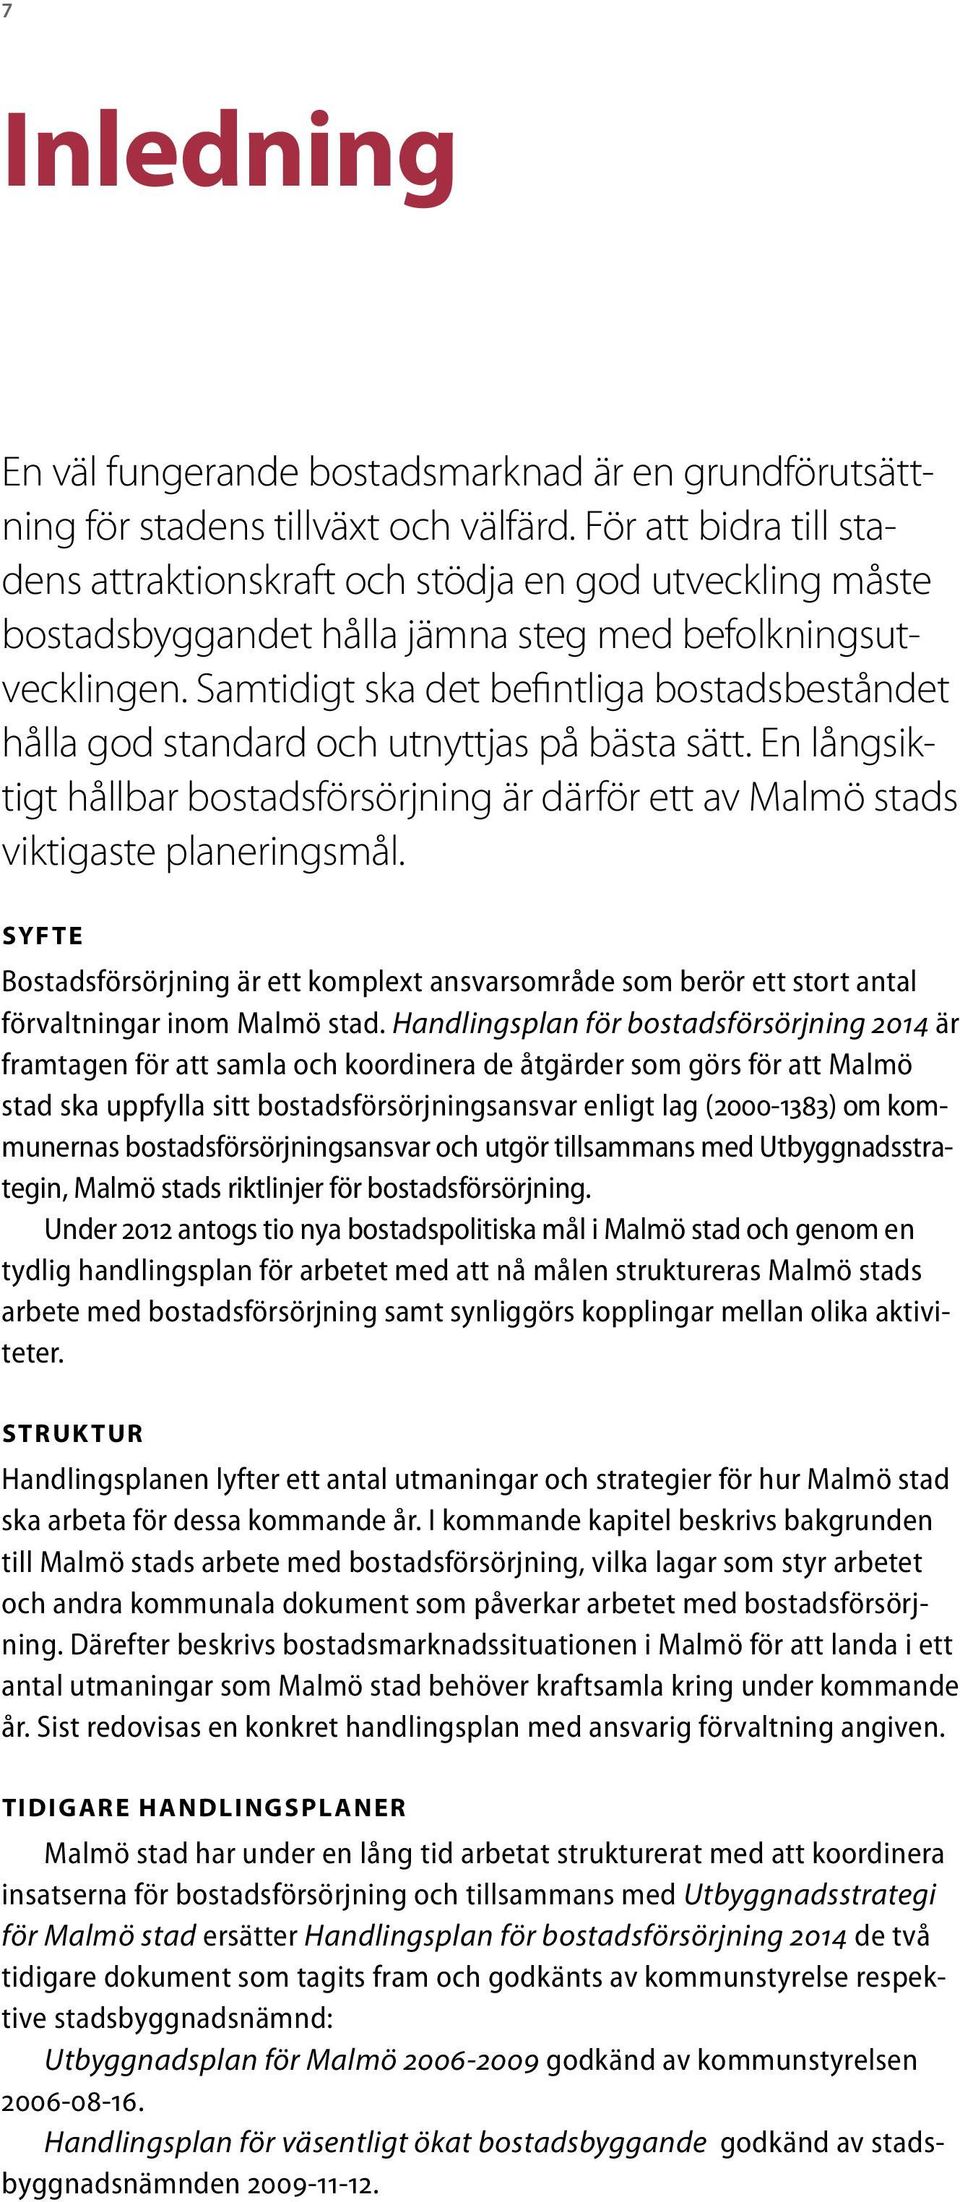 Samtidigt ska det befintliga bostadsbeståndet hålla god standard och utnyttjas på bästa sätt. En långsiktigt hållbar bostadsförsörjning är därför ett av Malmö stads viktigaste planeringsmål.